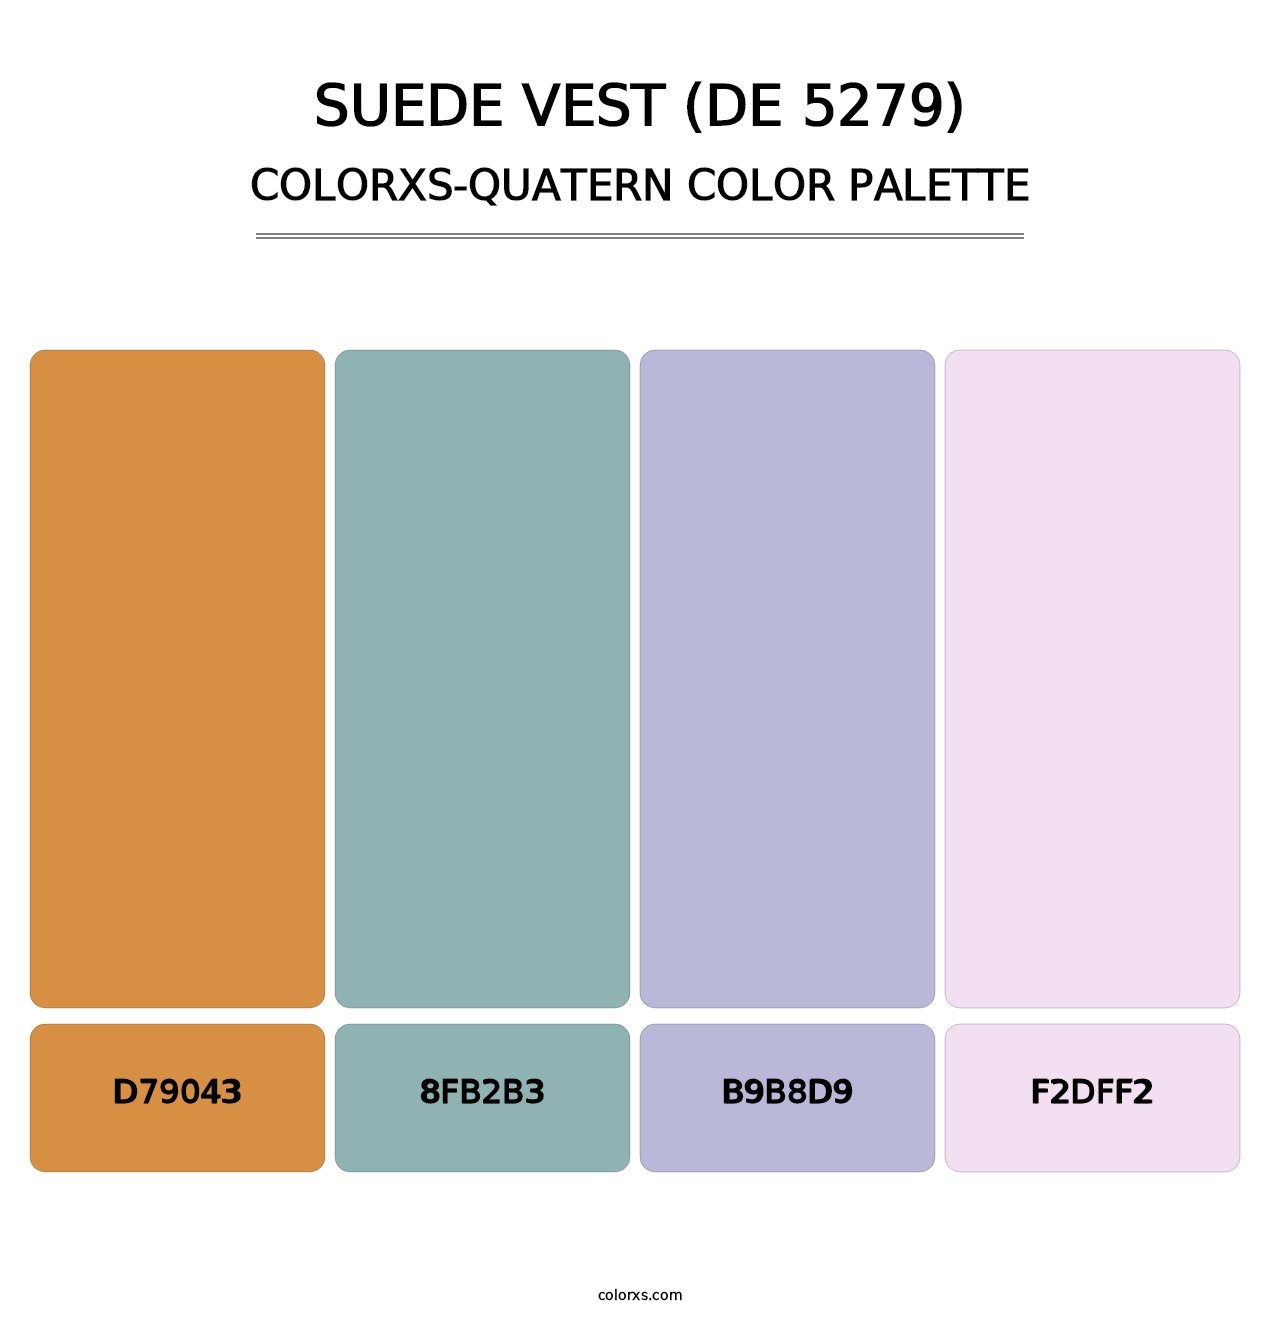 Suede Vest (DE 5279) - Colorxs Quatern Palette